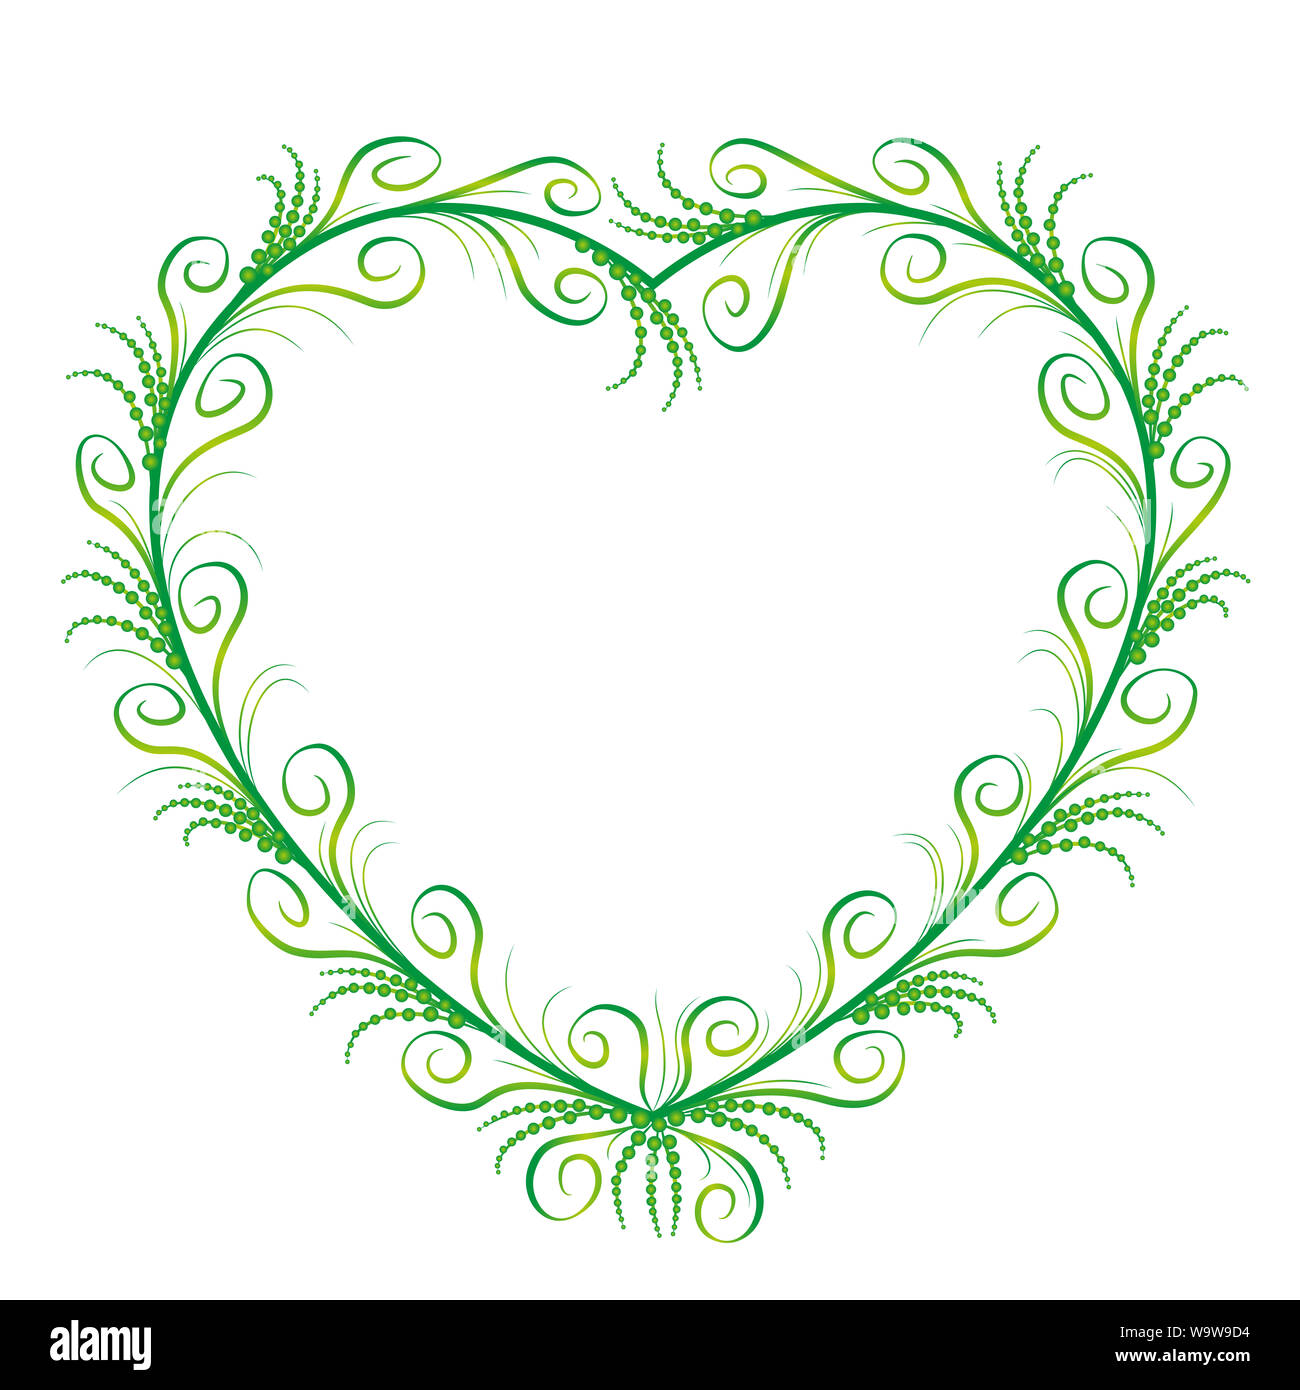 Romantische, elegante grüne Herz Ornament mit zarten, filigranen, anmutig und sylphlike blüht - Abbildung auf weißem Hintergrund. Stockfoto